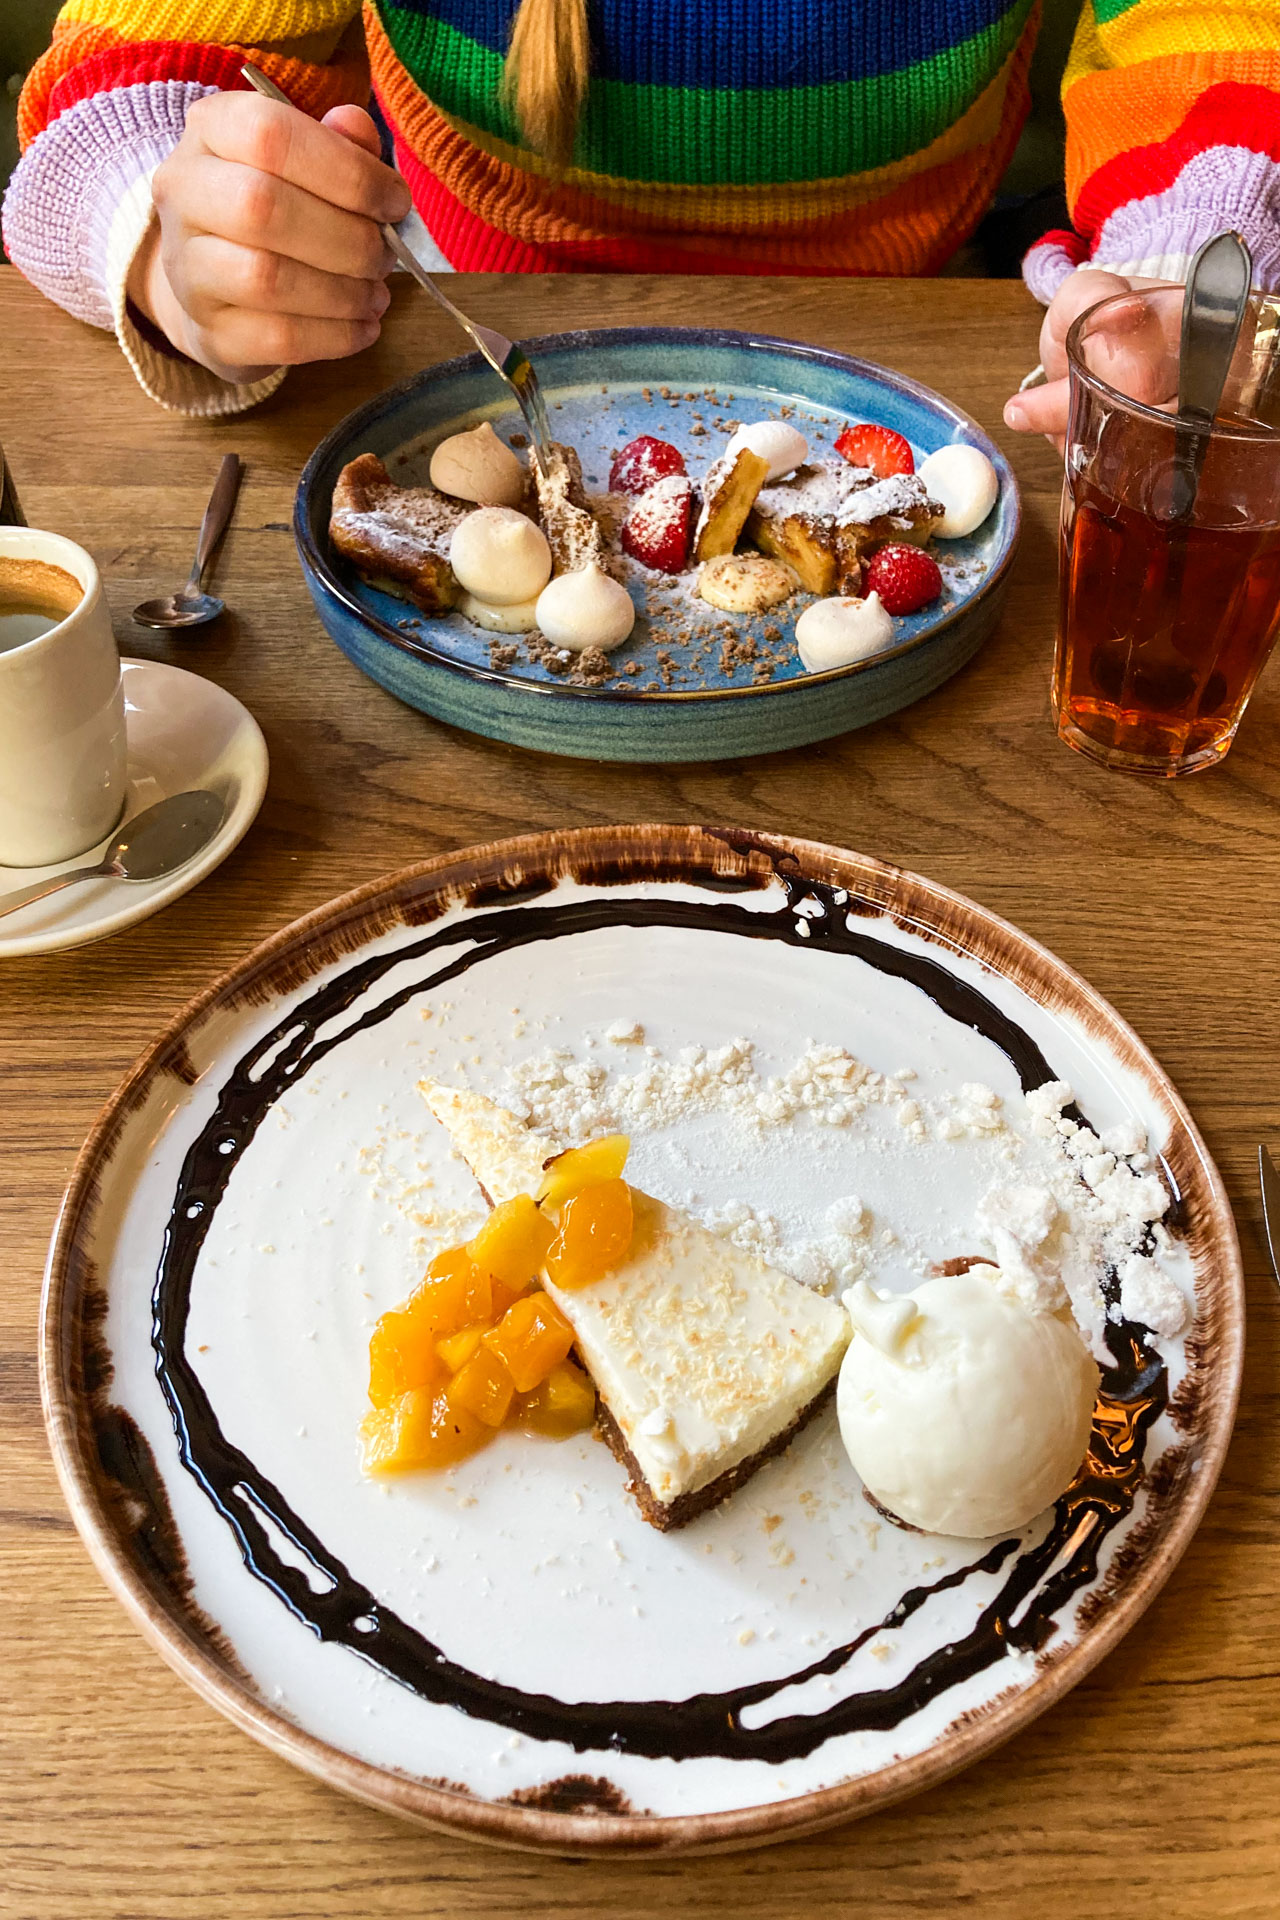 Vooraan een bord met cheesecake met ijs en geel fruit en achterop de tafel een bord met een dessert met allerlei onderdelen, waaronder merengue puntjes en aardbeien.